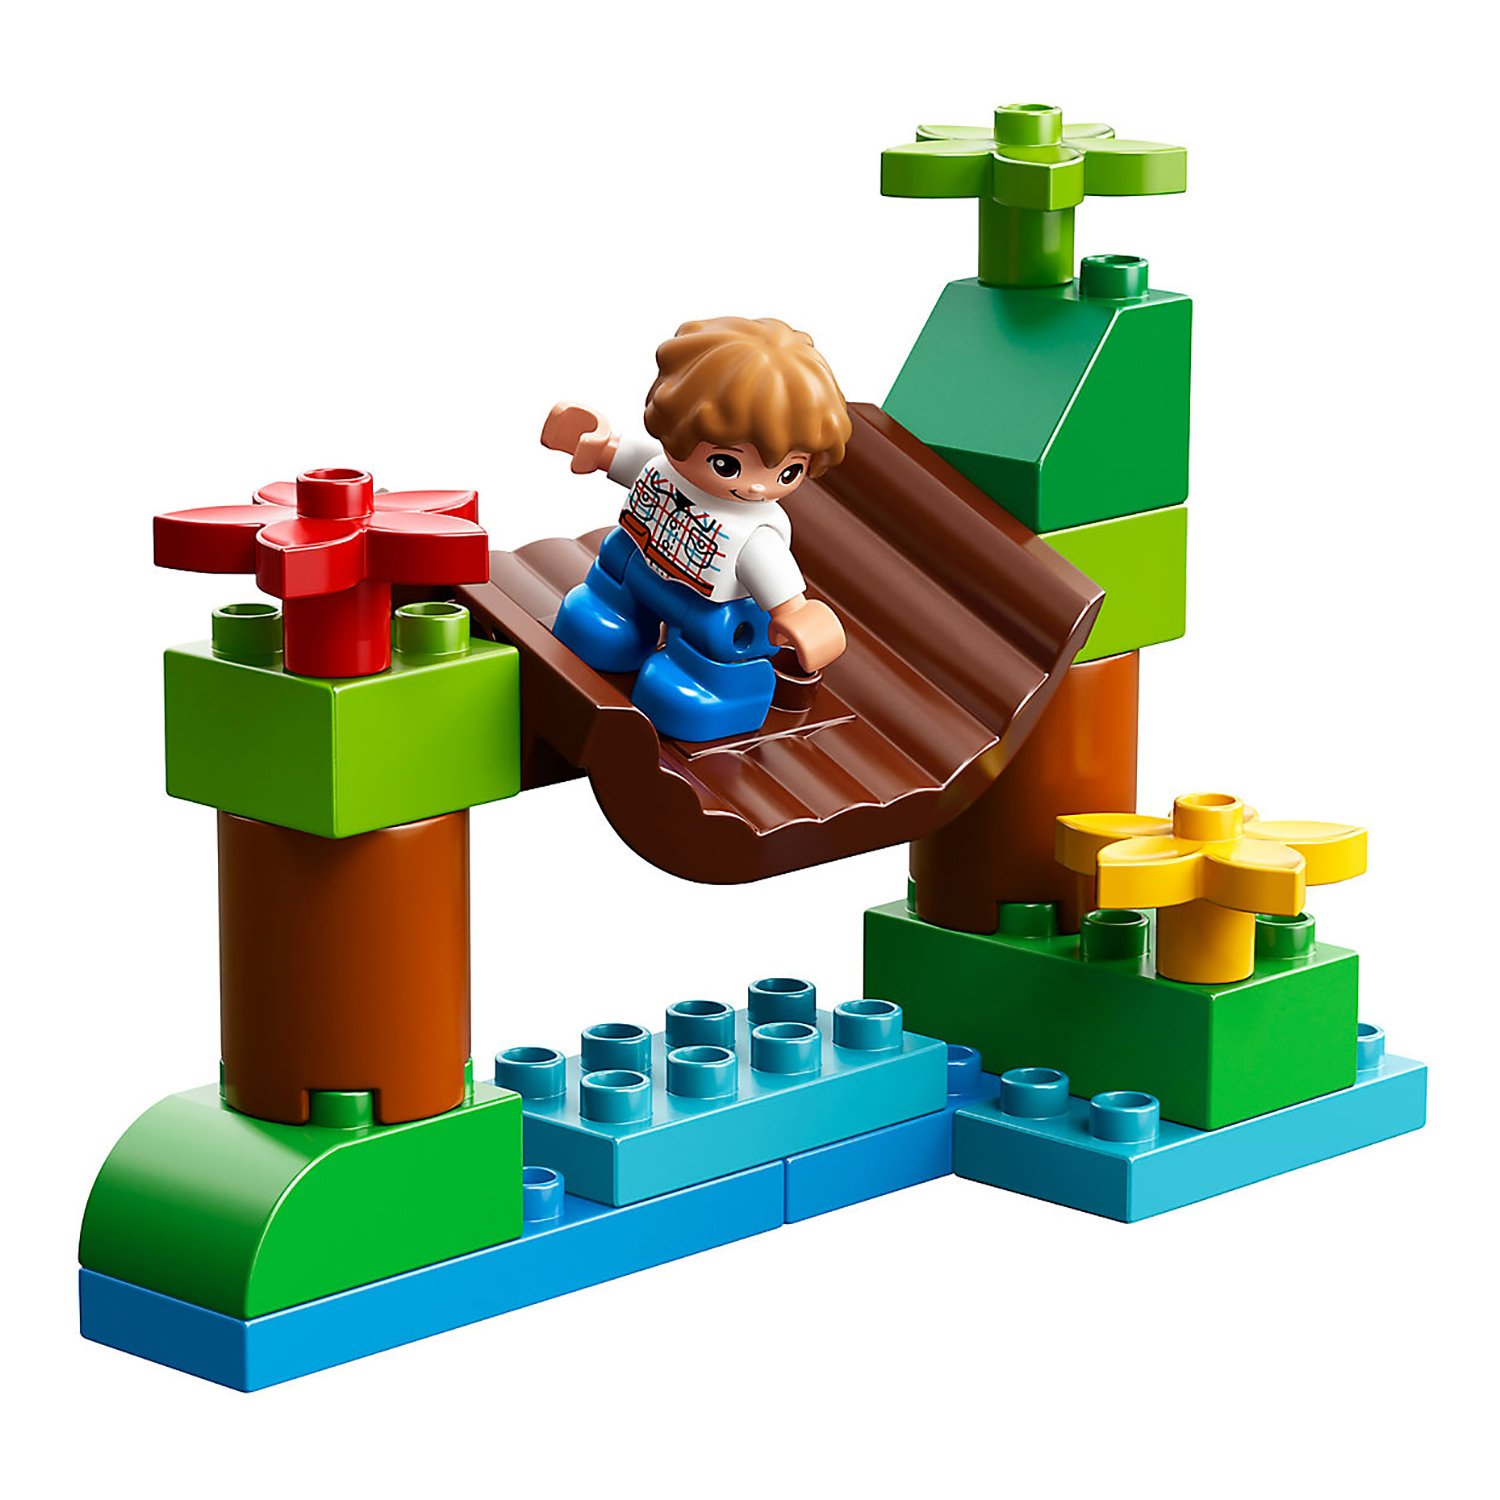 Конструктор LEGO Duplo «Парк динозавров» 10879